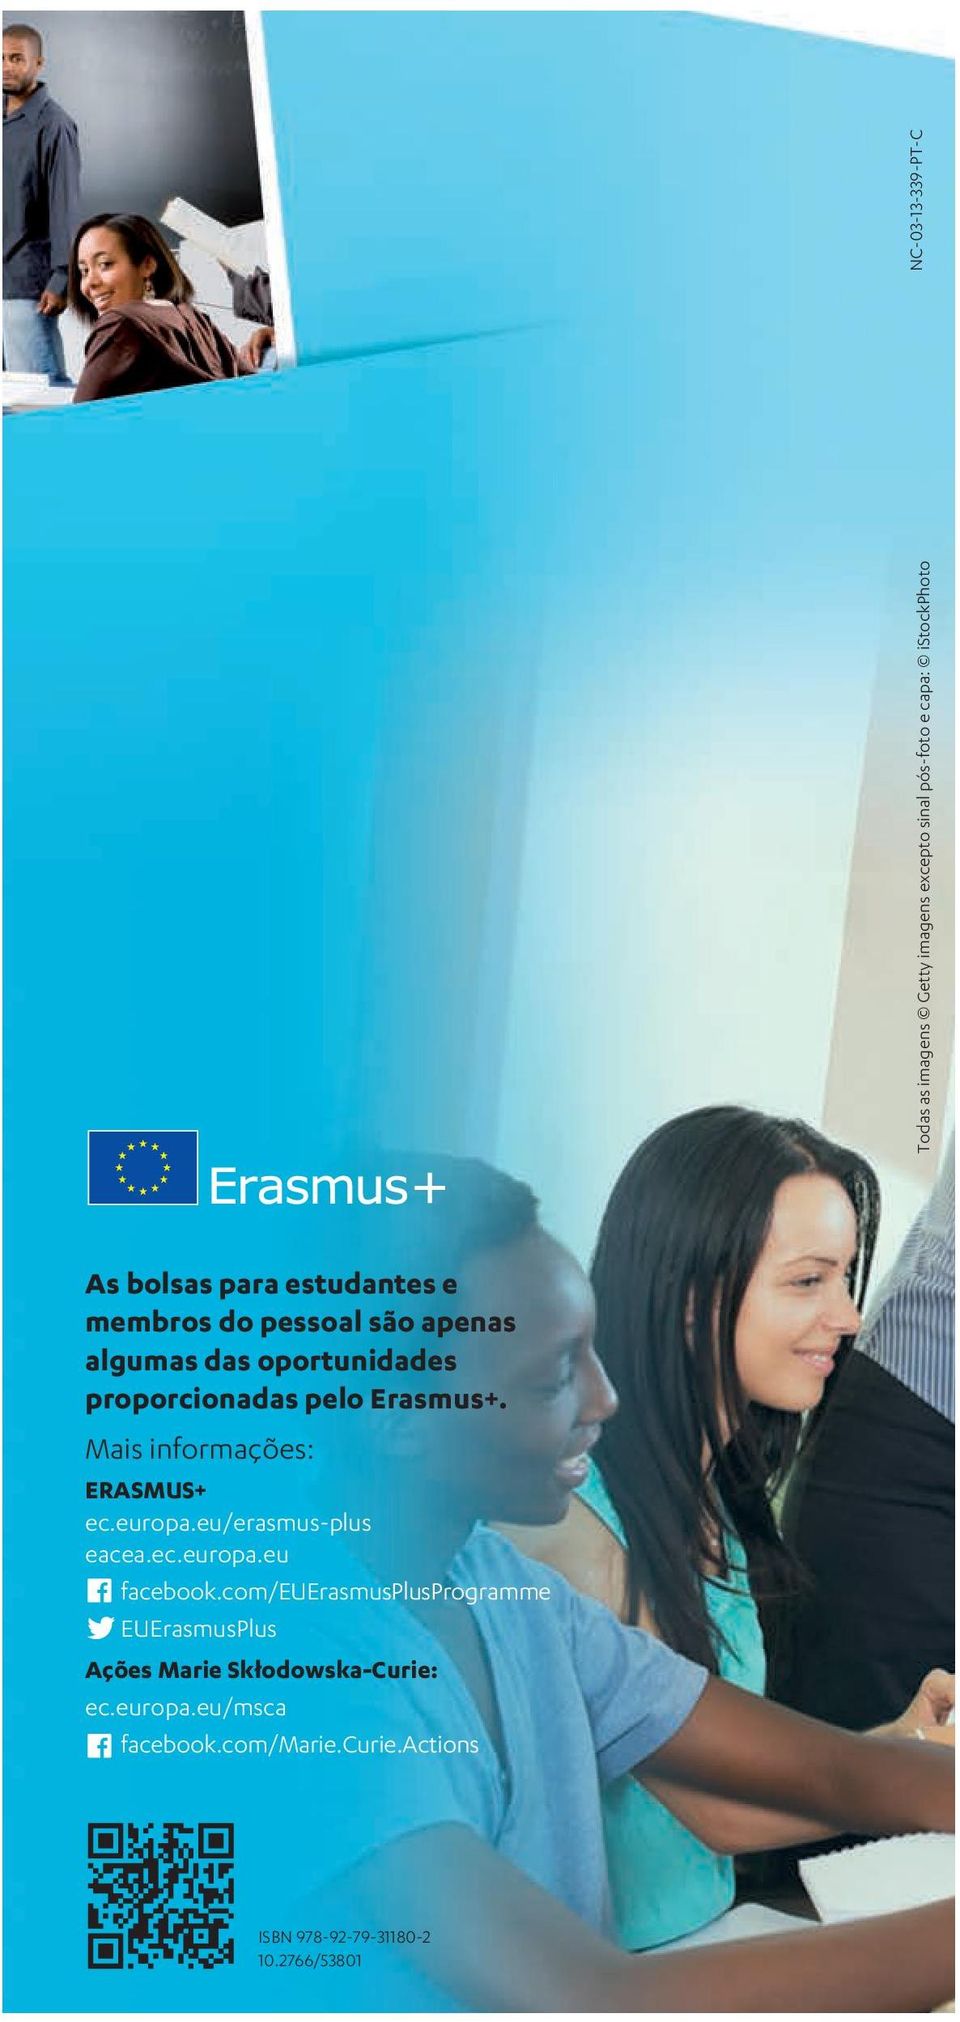 Mais informações: ERASMUS+ ec.europa.eu/erasmus-plus eacea.ec.europa.eu facebook.